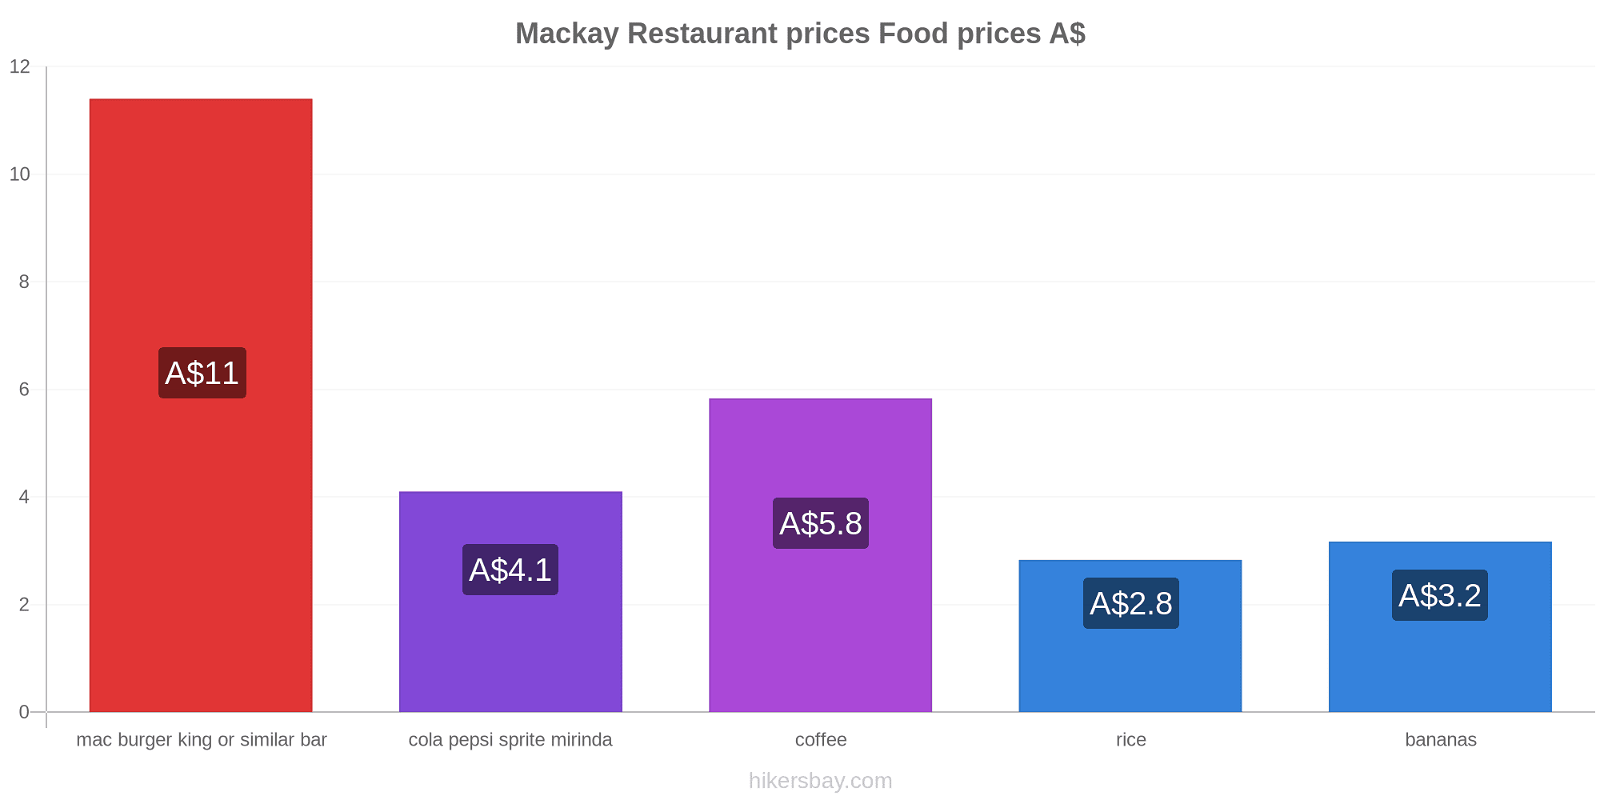 Mackay price changes hikersbay.com